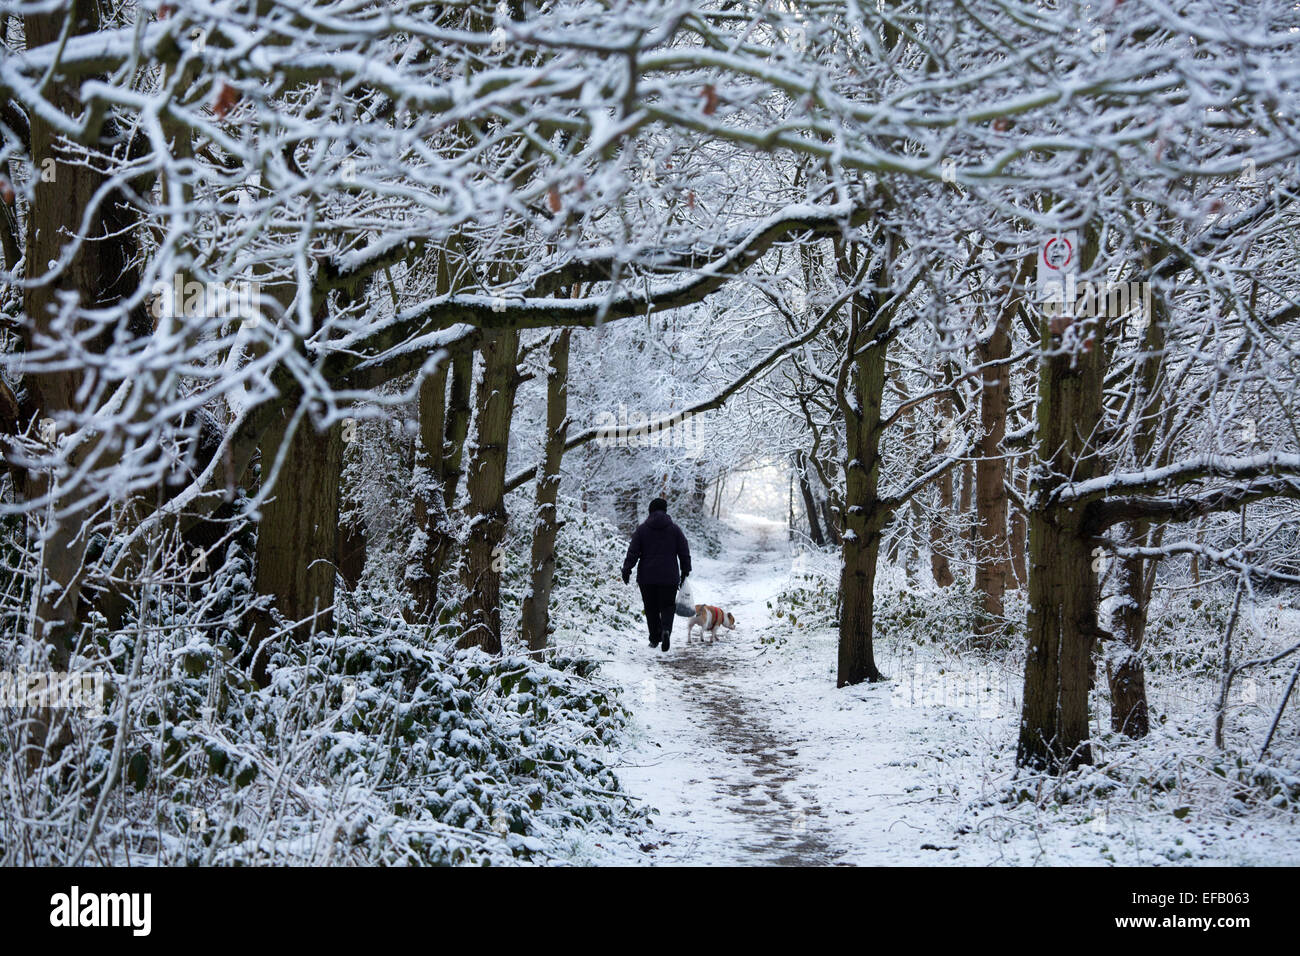 La neige a couvert Baddesley Ensor en Amérique du Warwickshire, Royaume-Uni. Une femme entre son chien à travers les arbres couverts de neige dans la région de Keys Hill. Banque D'Images